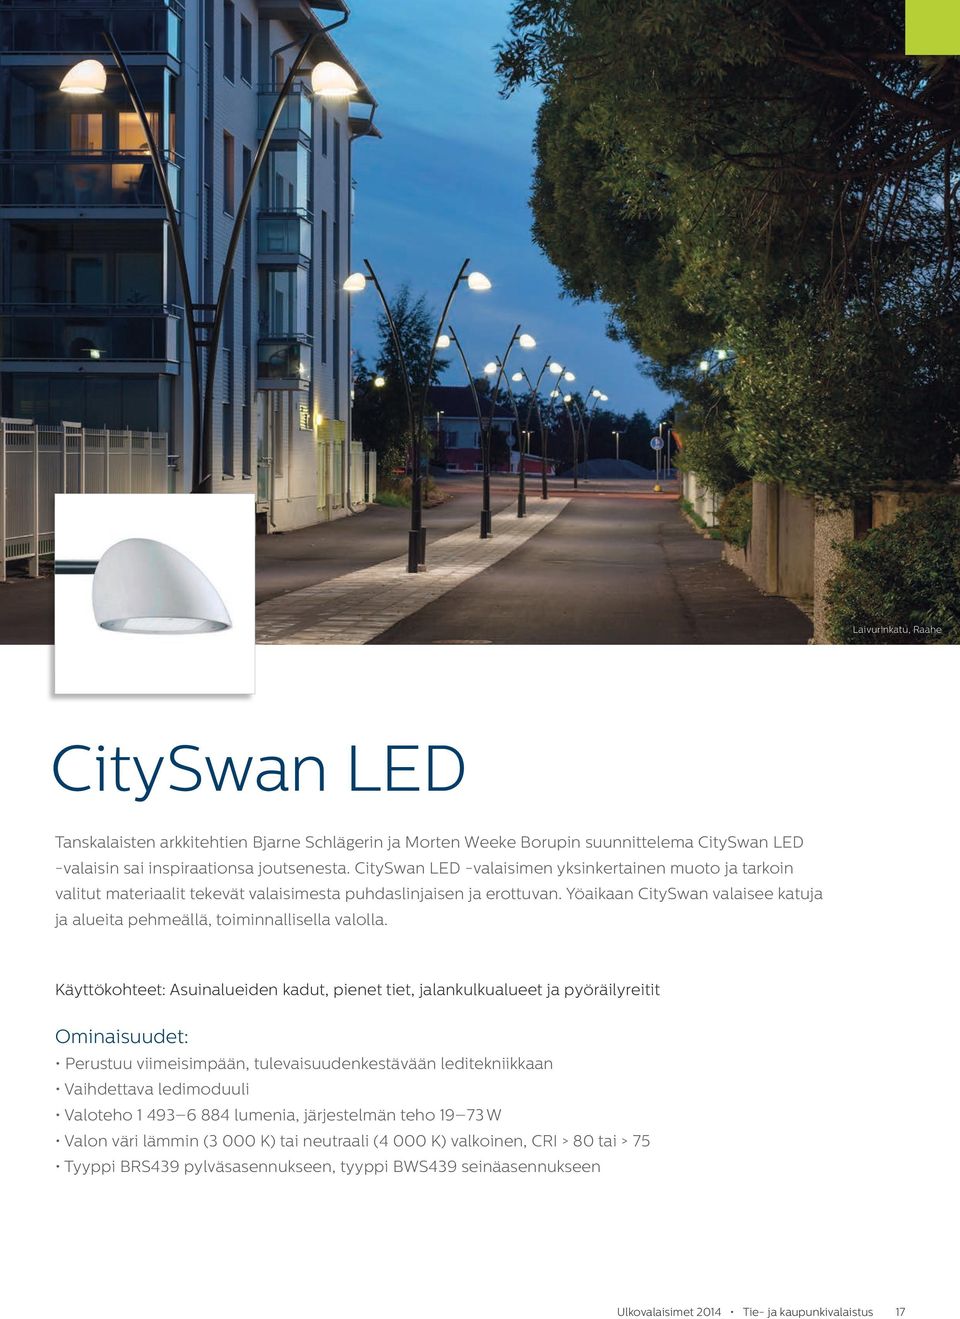 Yöaikaan City Swan valaisee katuja ja alueita pehmeällä, toiminnallisella valolla.